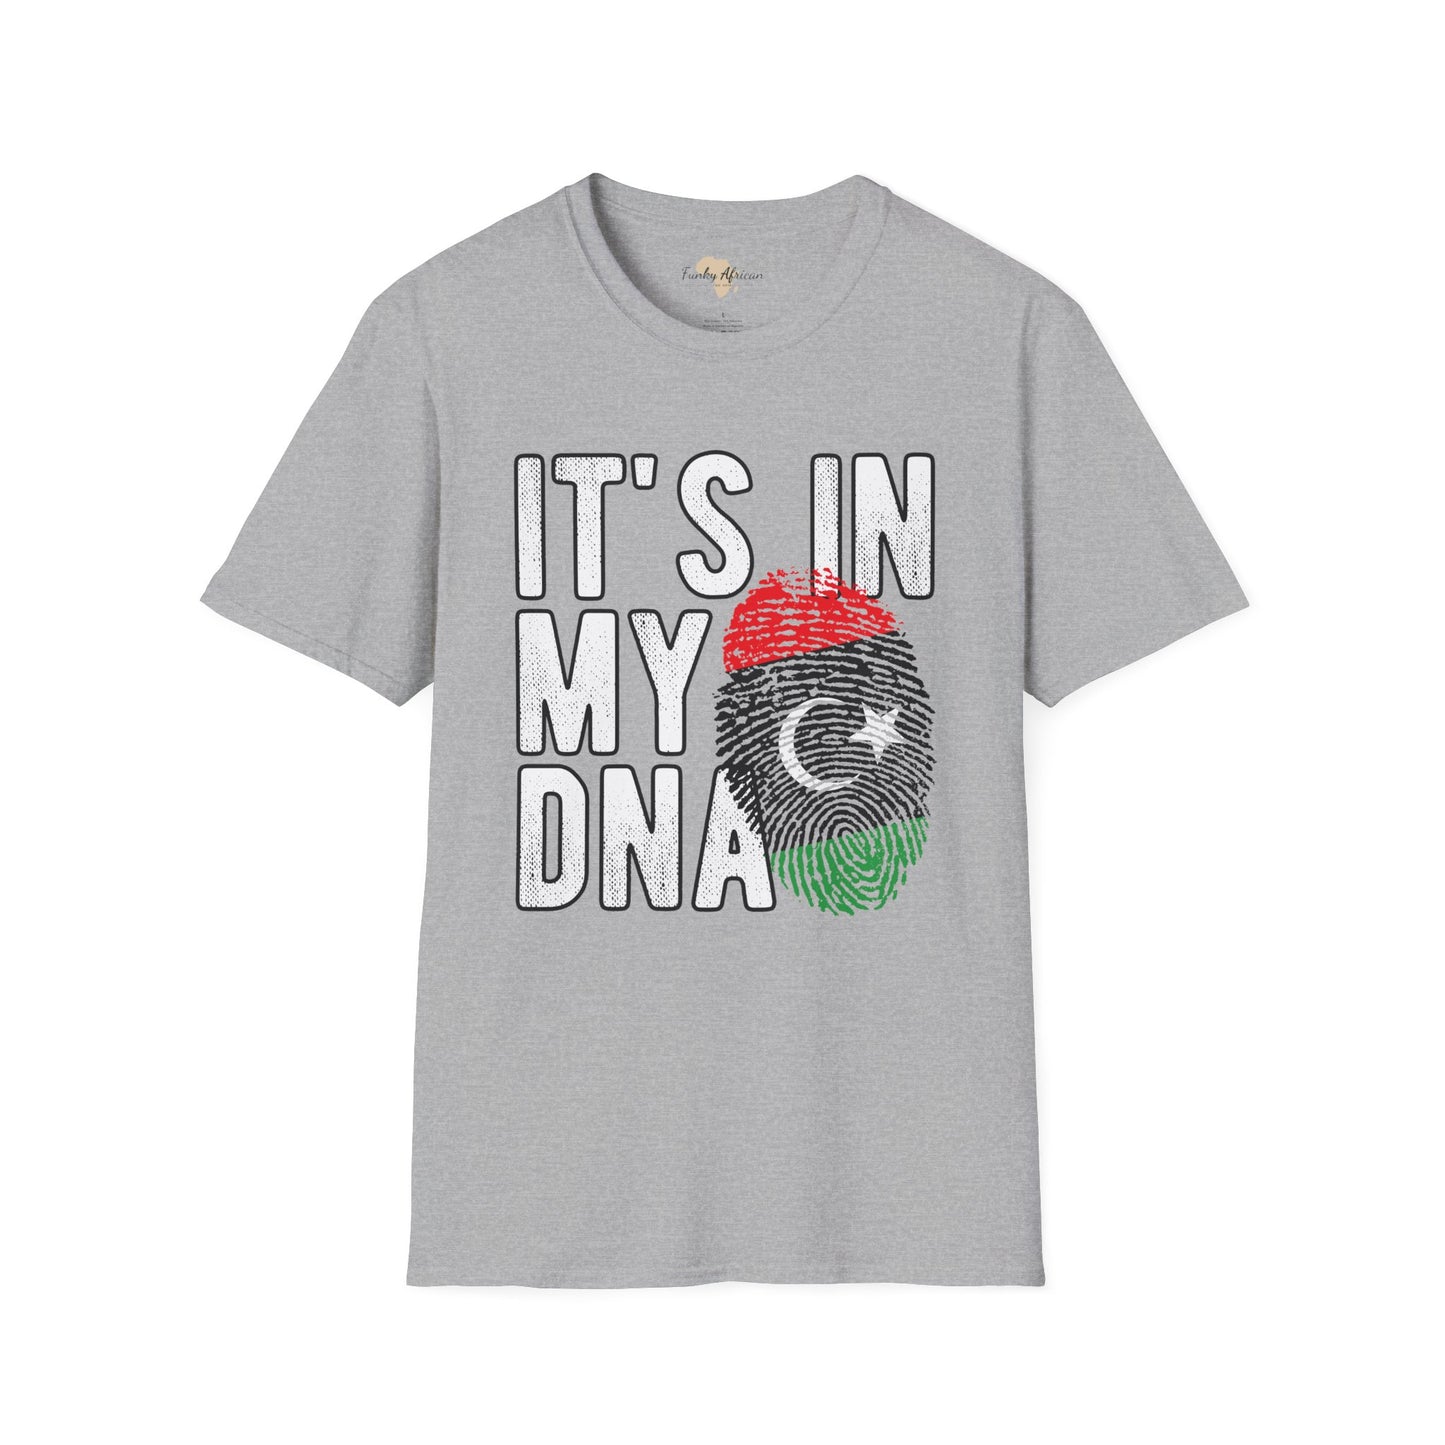 it's in my DNA unisex tee - Libya